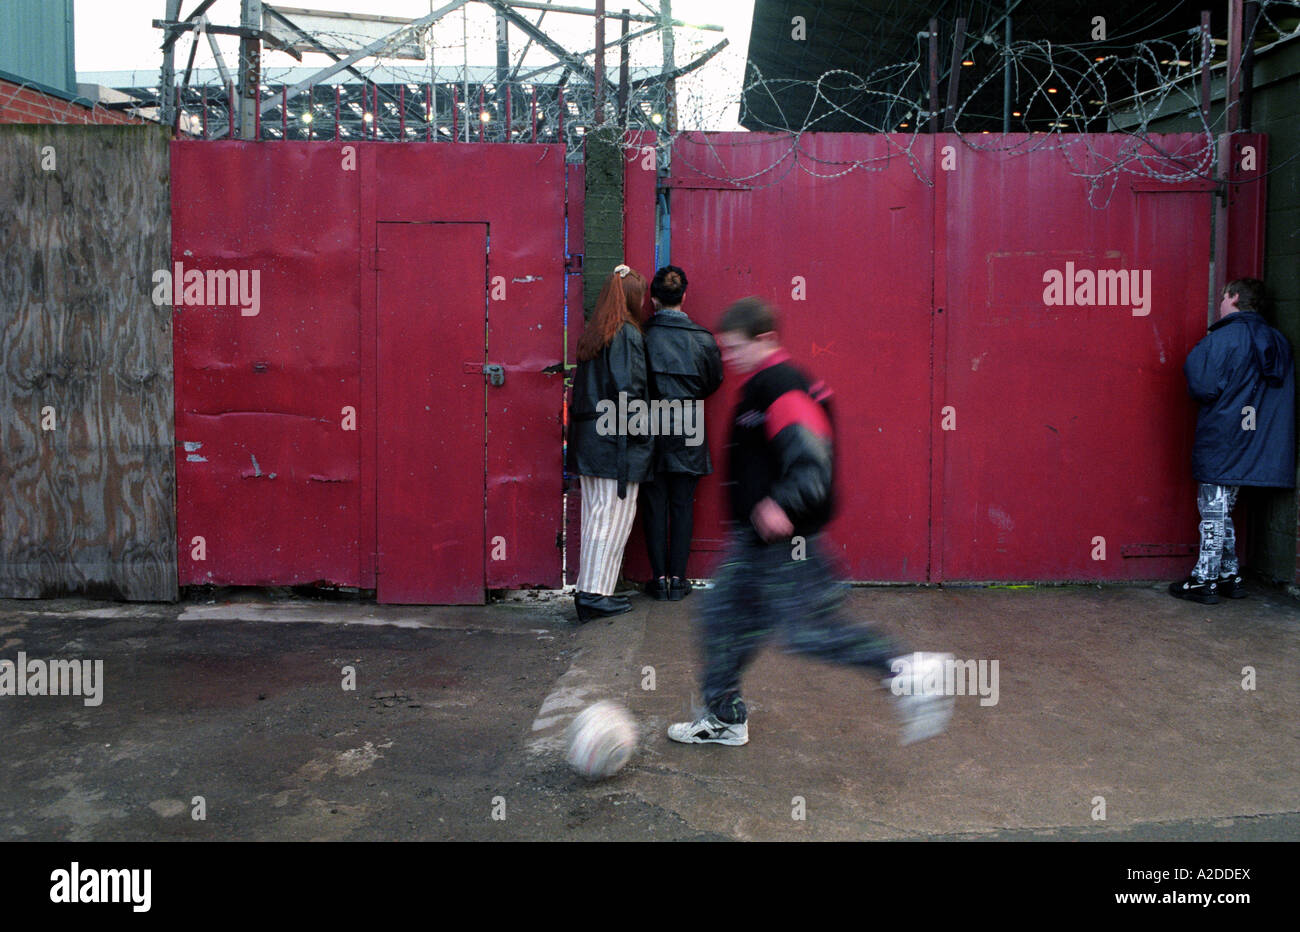 Kinder auf der Suche durch die verschlossenen Tore am Fußballplatz Prenton Park während eines Spiels. Stockfoto